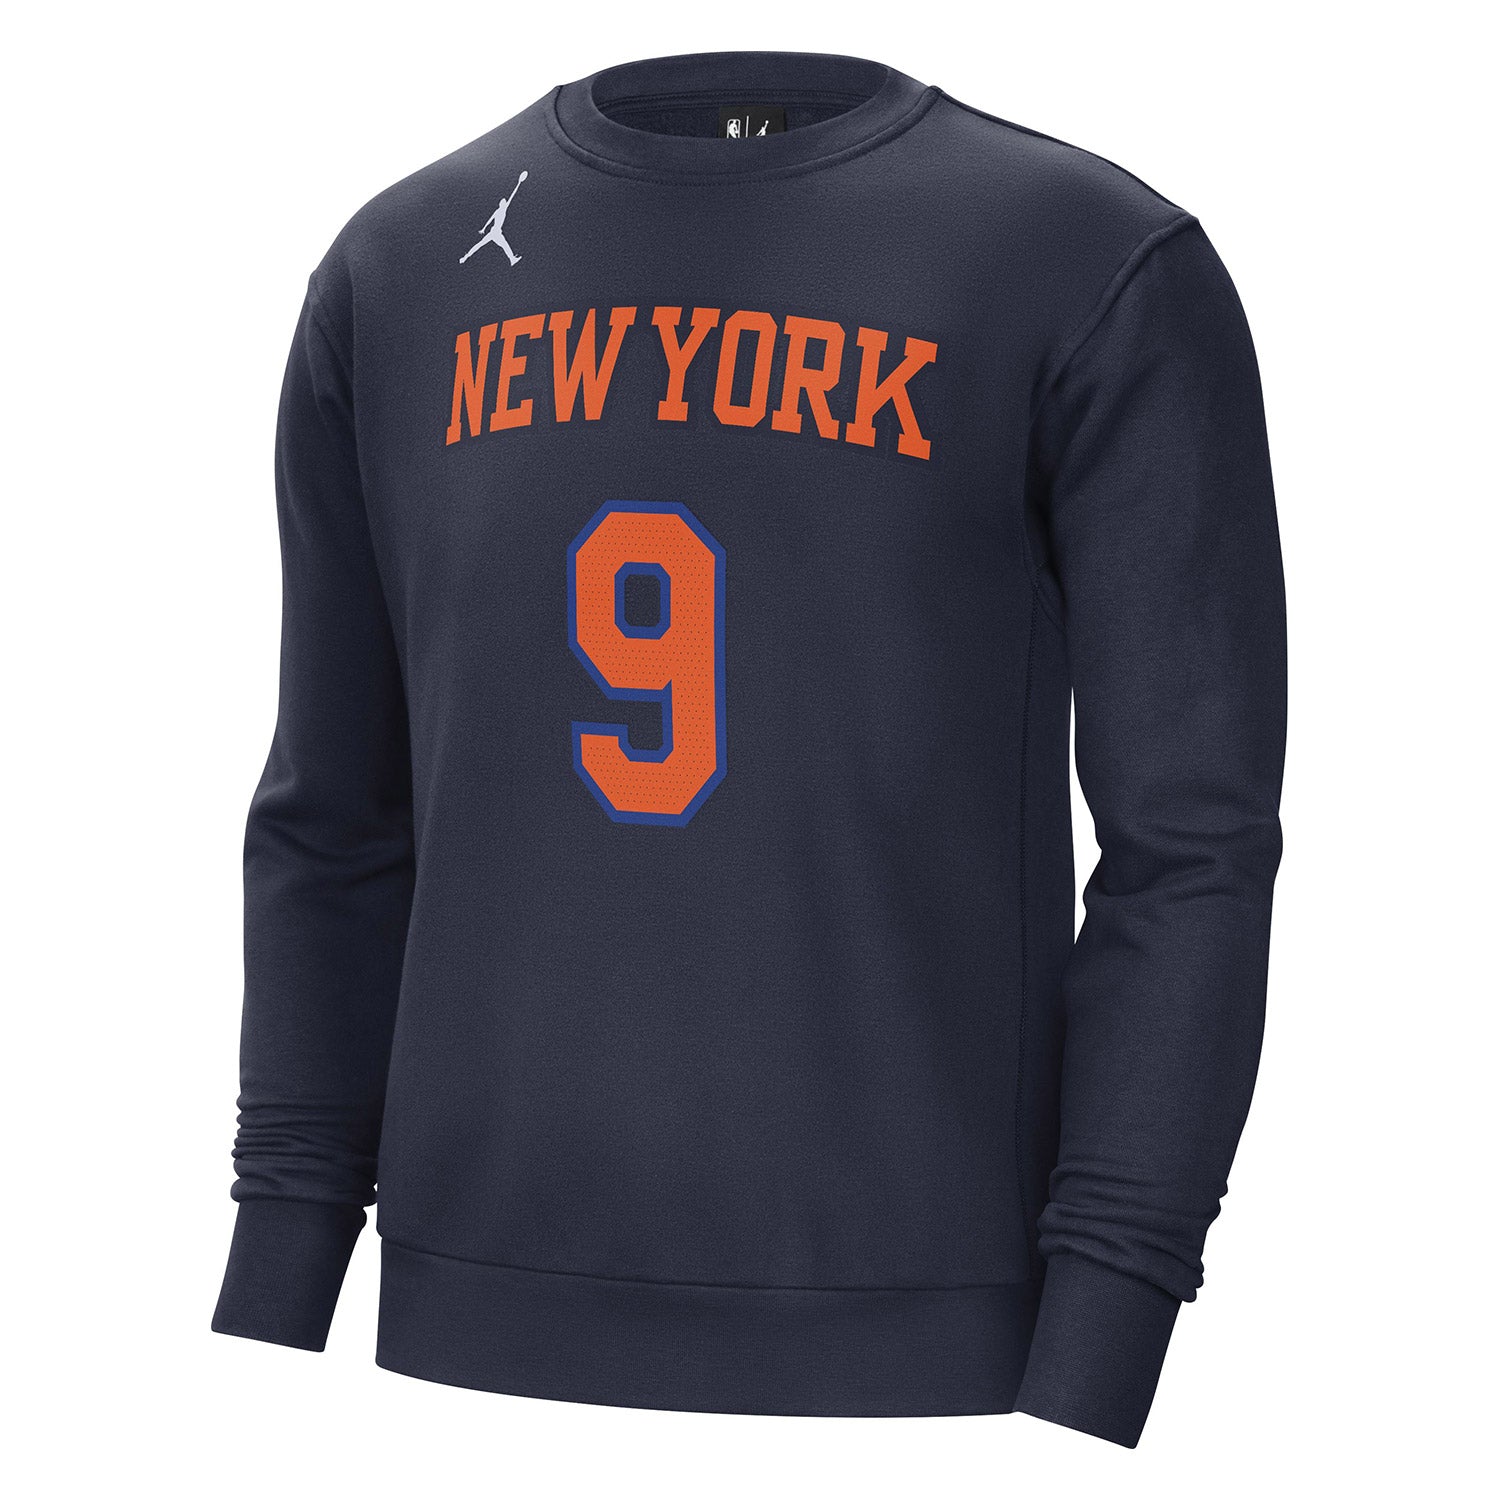 New York Knicks Nike Association Swingman Jersey - RJ Barrett Youth